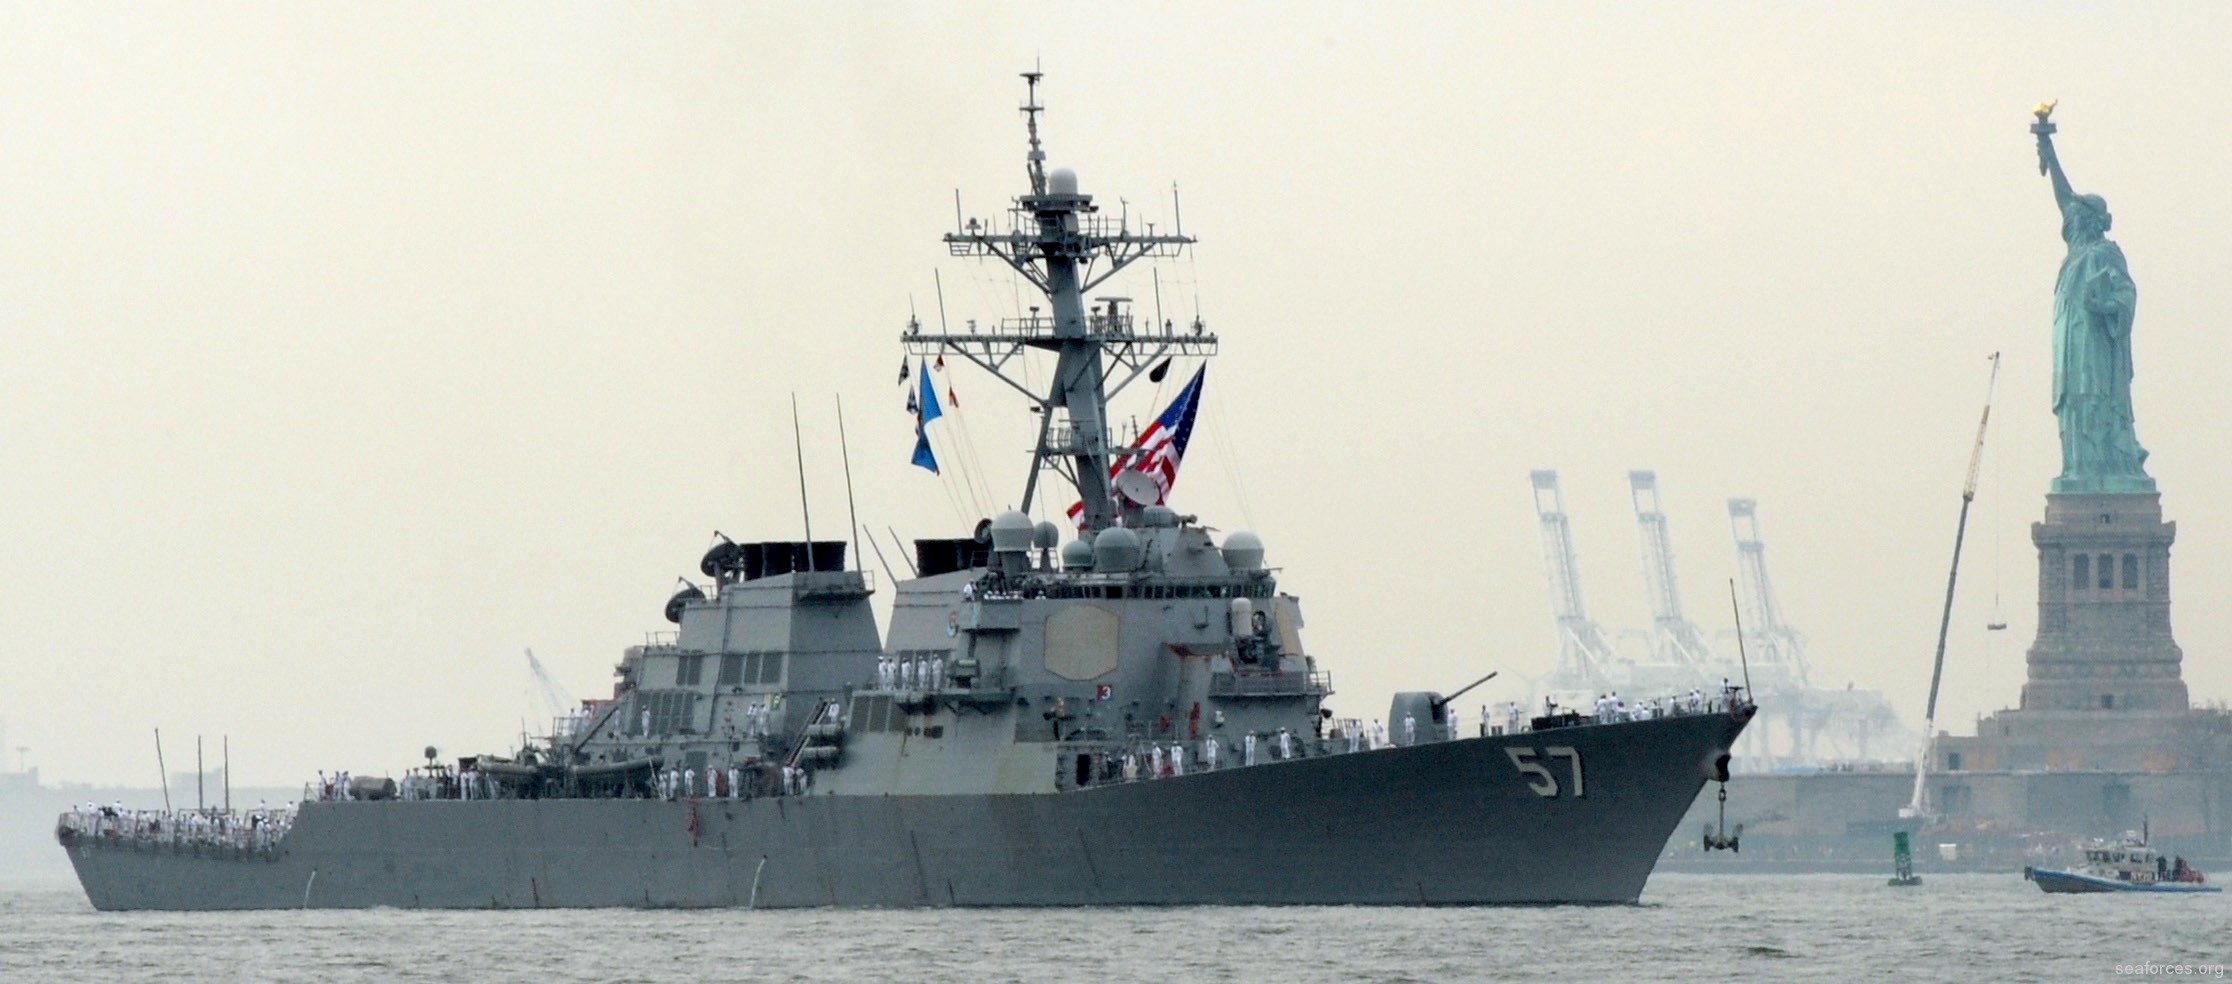 ddg-57 uss mitscher guided missile destroyer us navy 21 new york